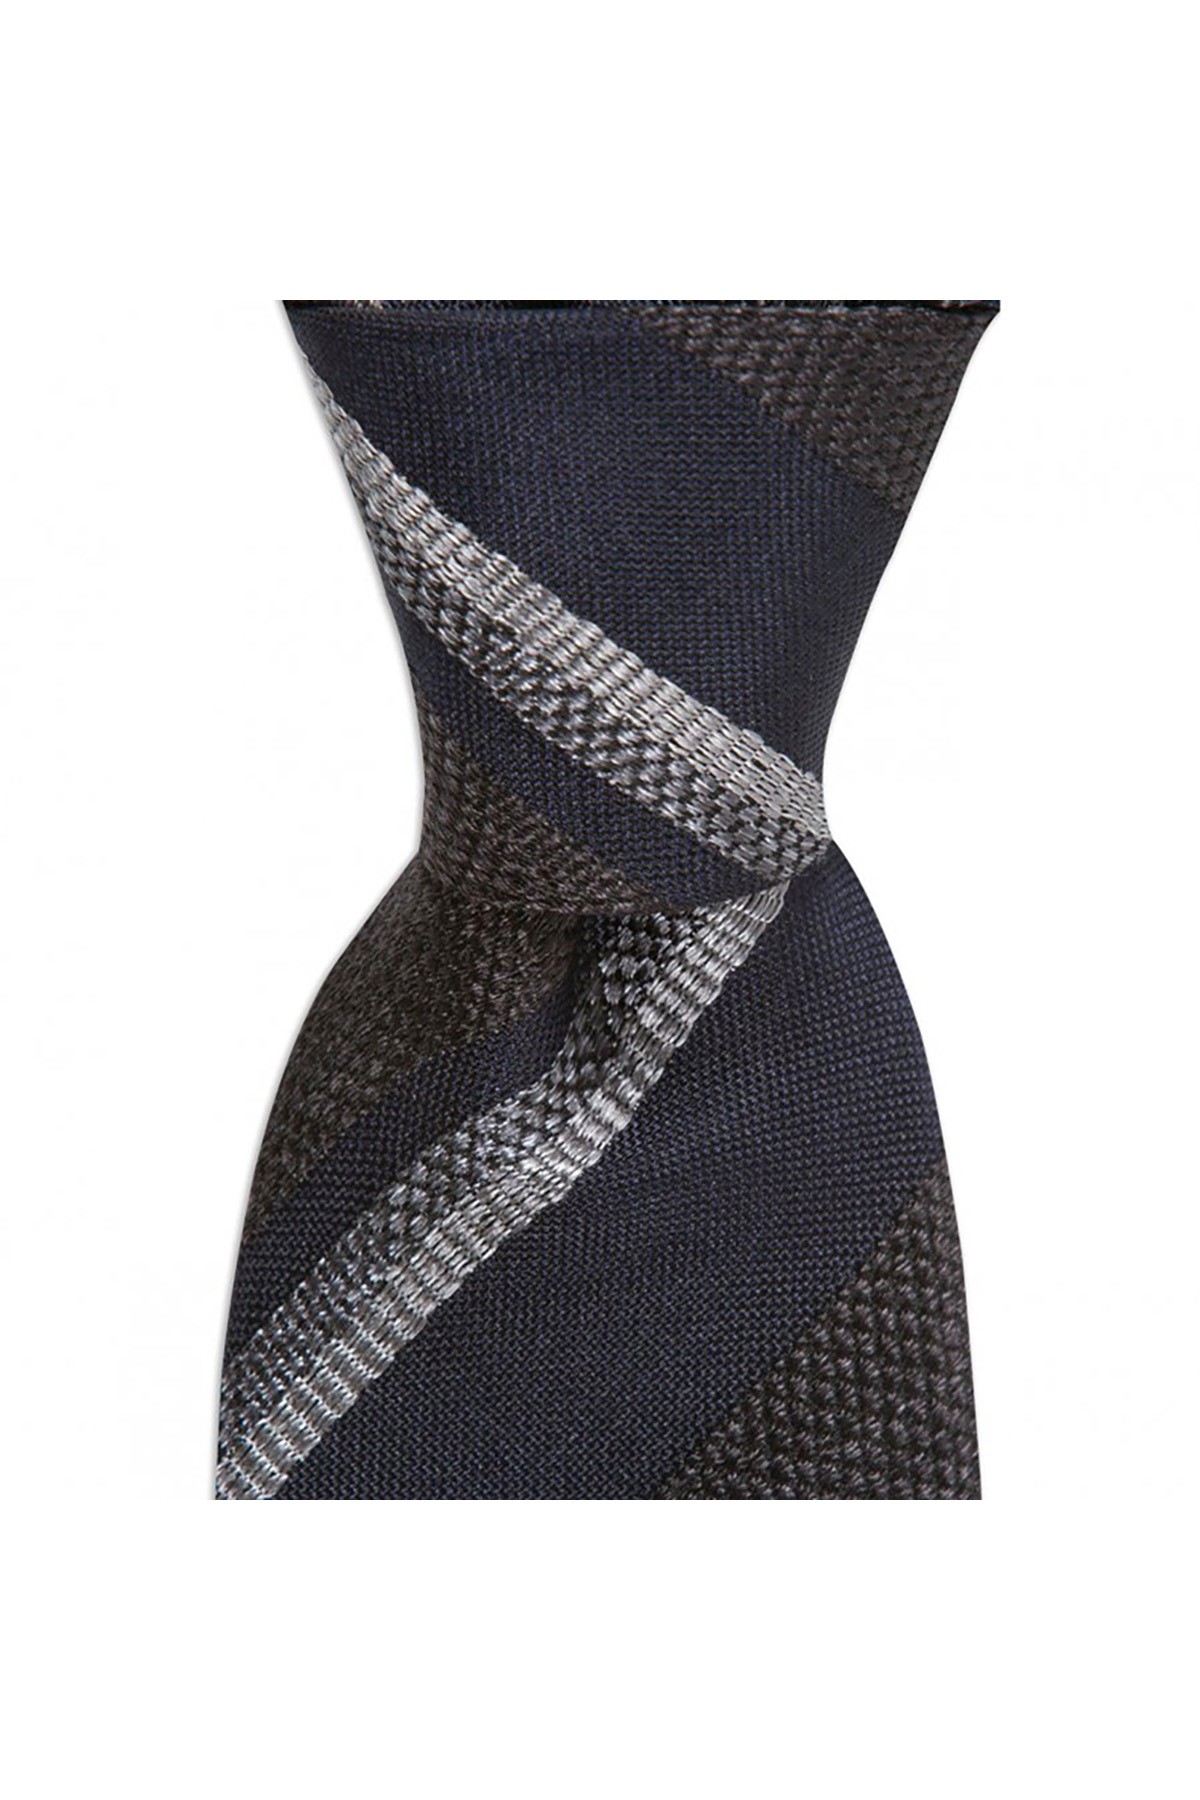 Desenli 8 cm genişliğinde yün ipek karışımlı kravat